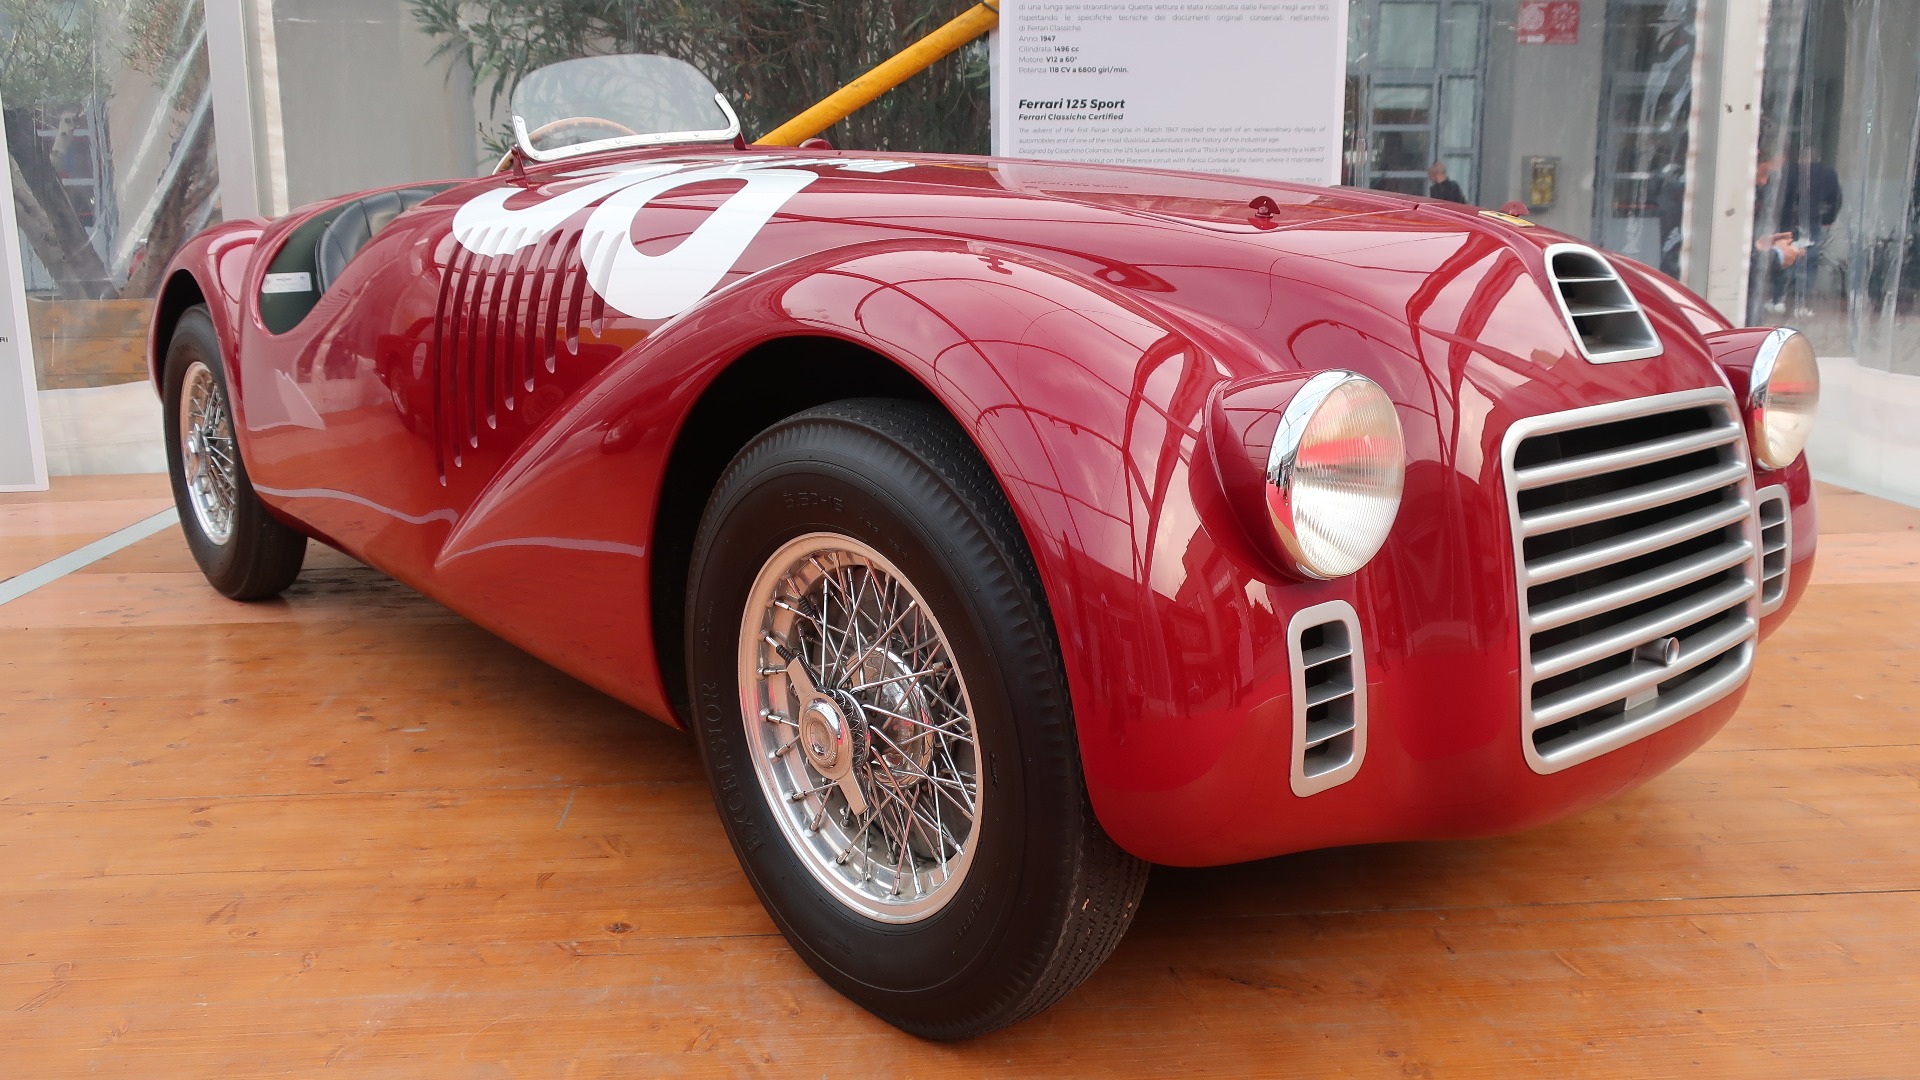 Den aller første Ferrari laget, 1947 Ferrari 125 Sport var lånt ut av Ferrari for messen.